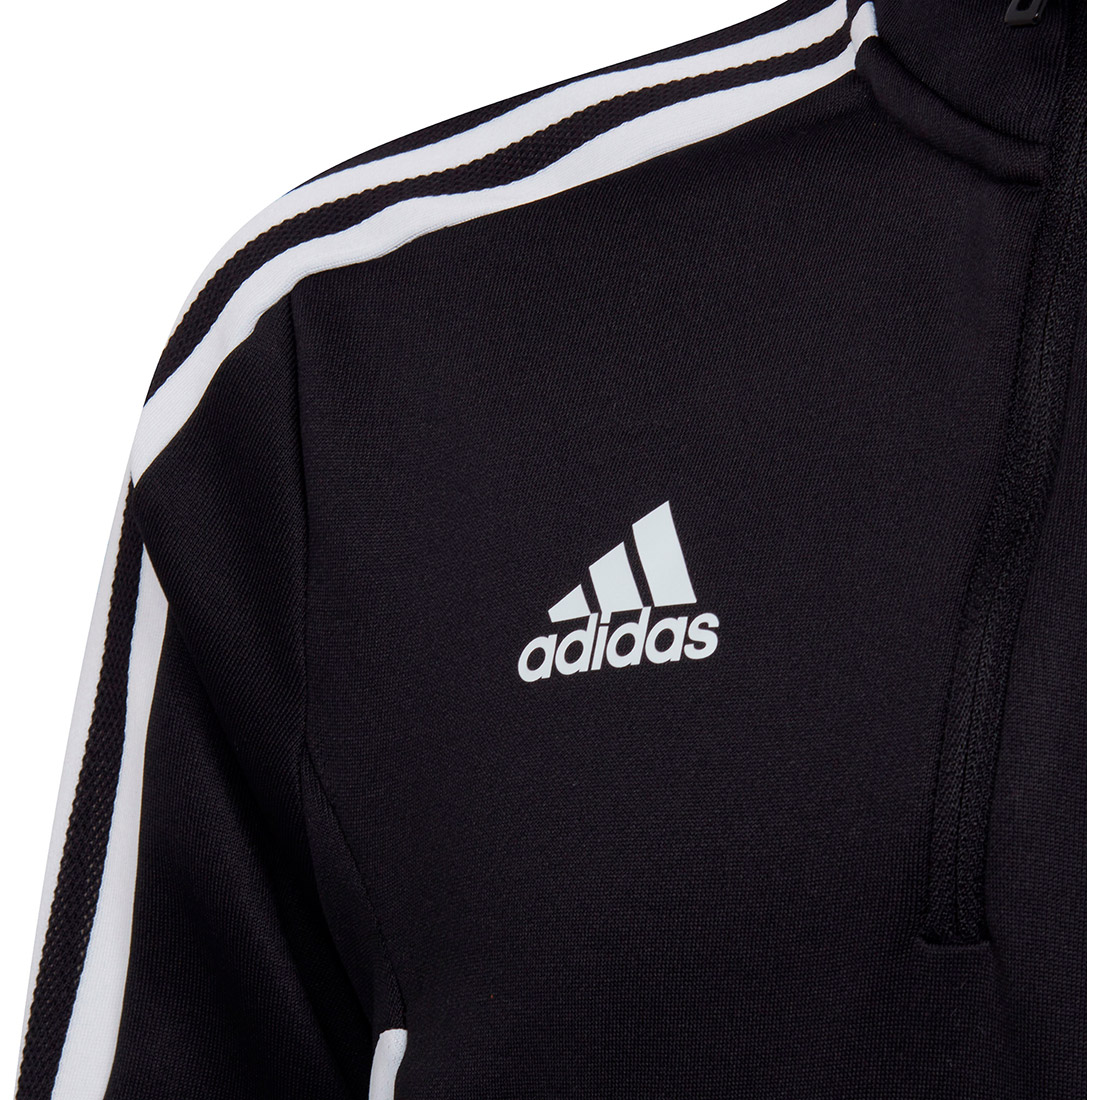 Adidas Kinder Trainingstop Condivo 22 schwarz-weiß